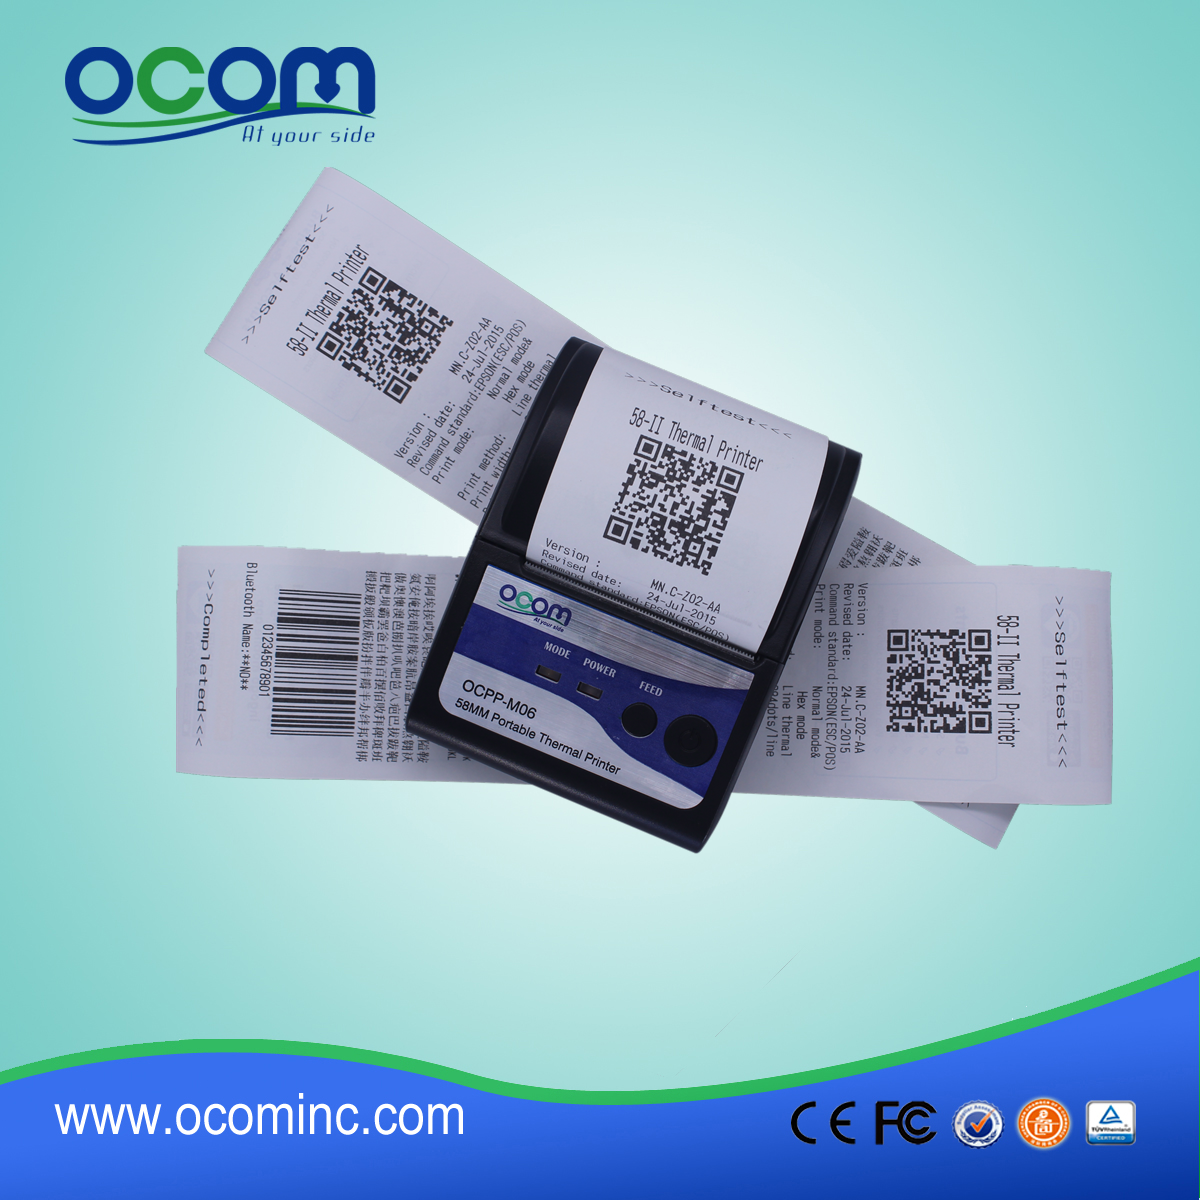 (OCPP-M06) OCOM Hot verkaufen niedrige Kosten android Drucker pos-Drucker